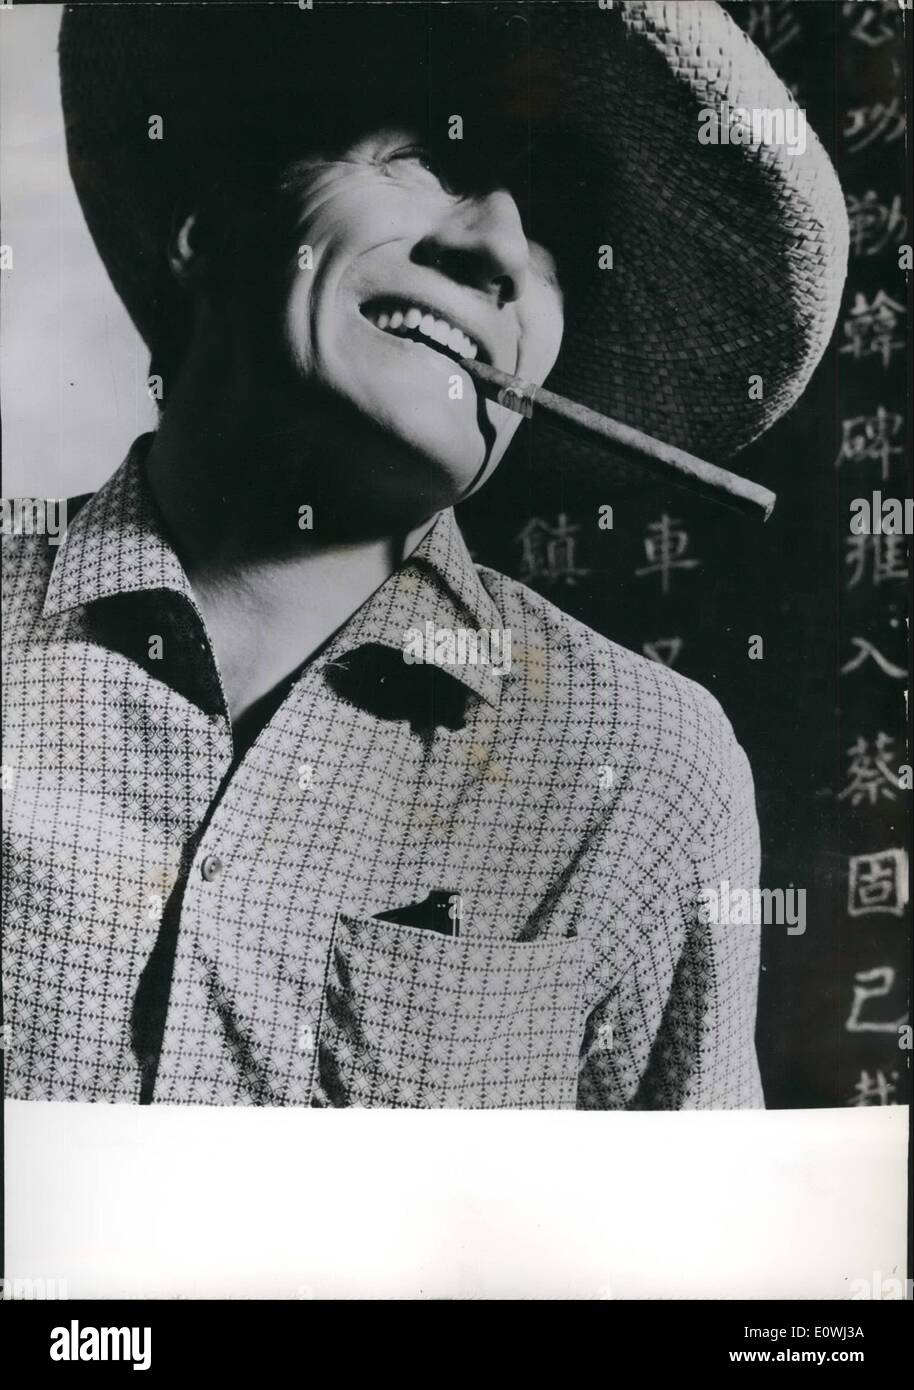 3. März 1963 - haben Sommer Hemden für Männer mexikanischen Stil... Präsentation in Paris Herren Hemd für den kommenden Sommer beweisen, dass die Trendfarbe '' China Blue'' werden in allen Schattierungen. Französische und europäische Männer, die wollen, bitte unter der Sonne werden zum Beispiel tragen. Ein Modell wie dieses eines mexikanischen Stil mit schwulen Motiven, aus Nylon. Stockfoto